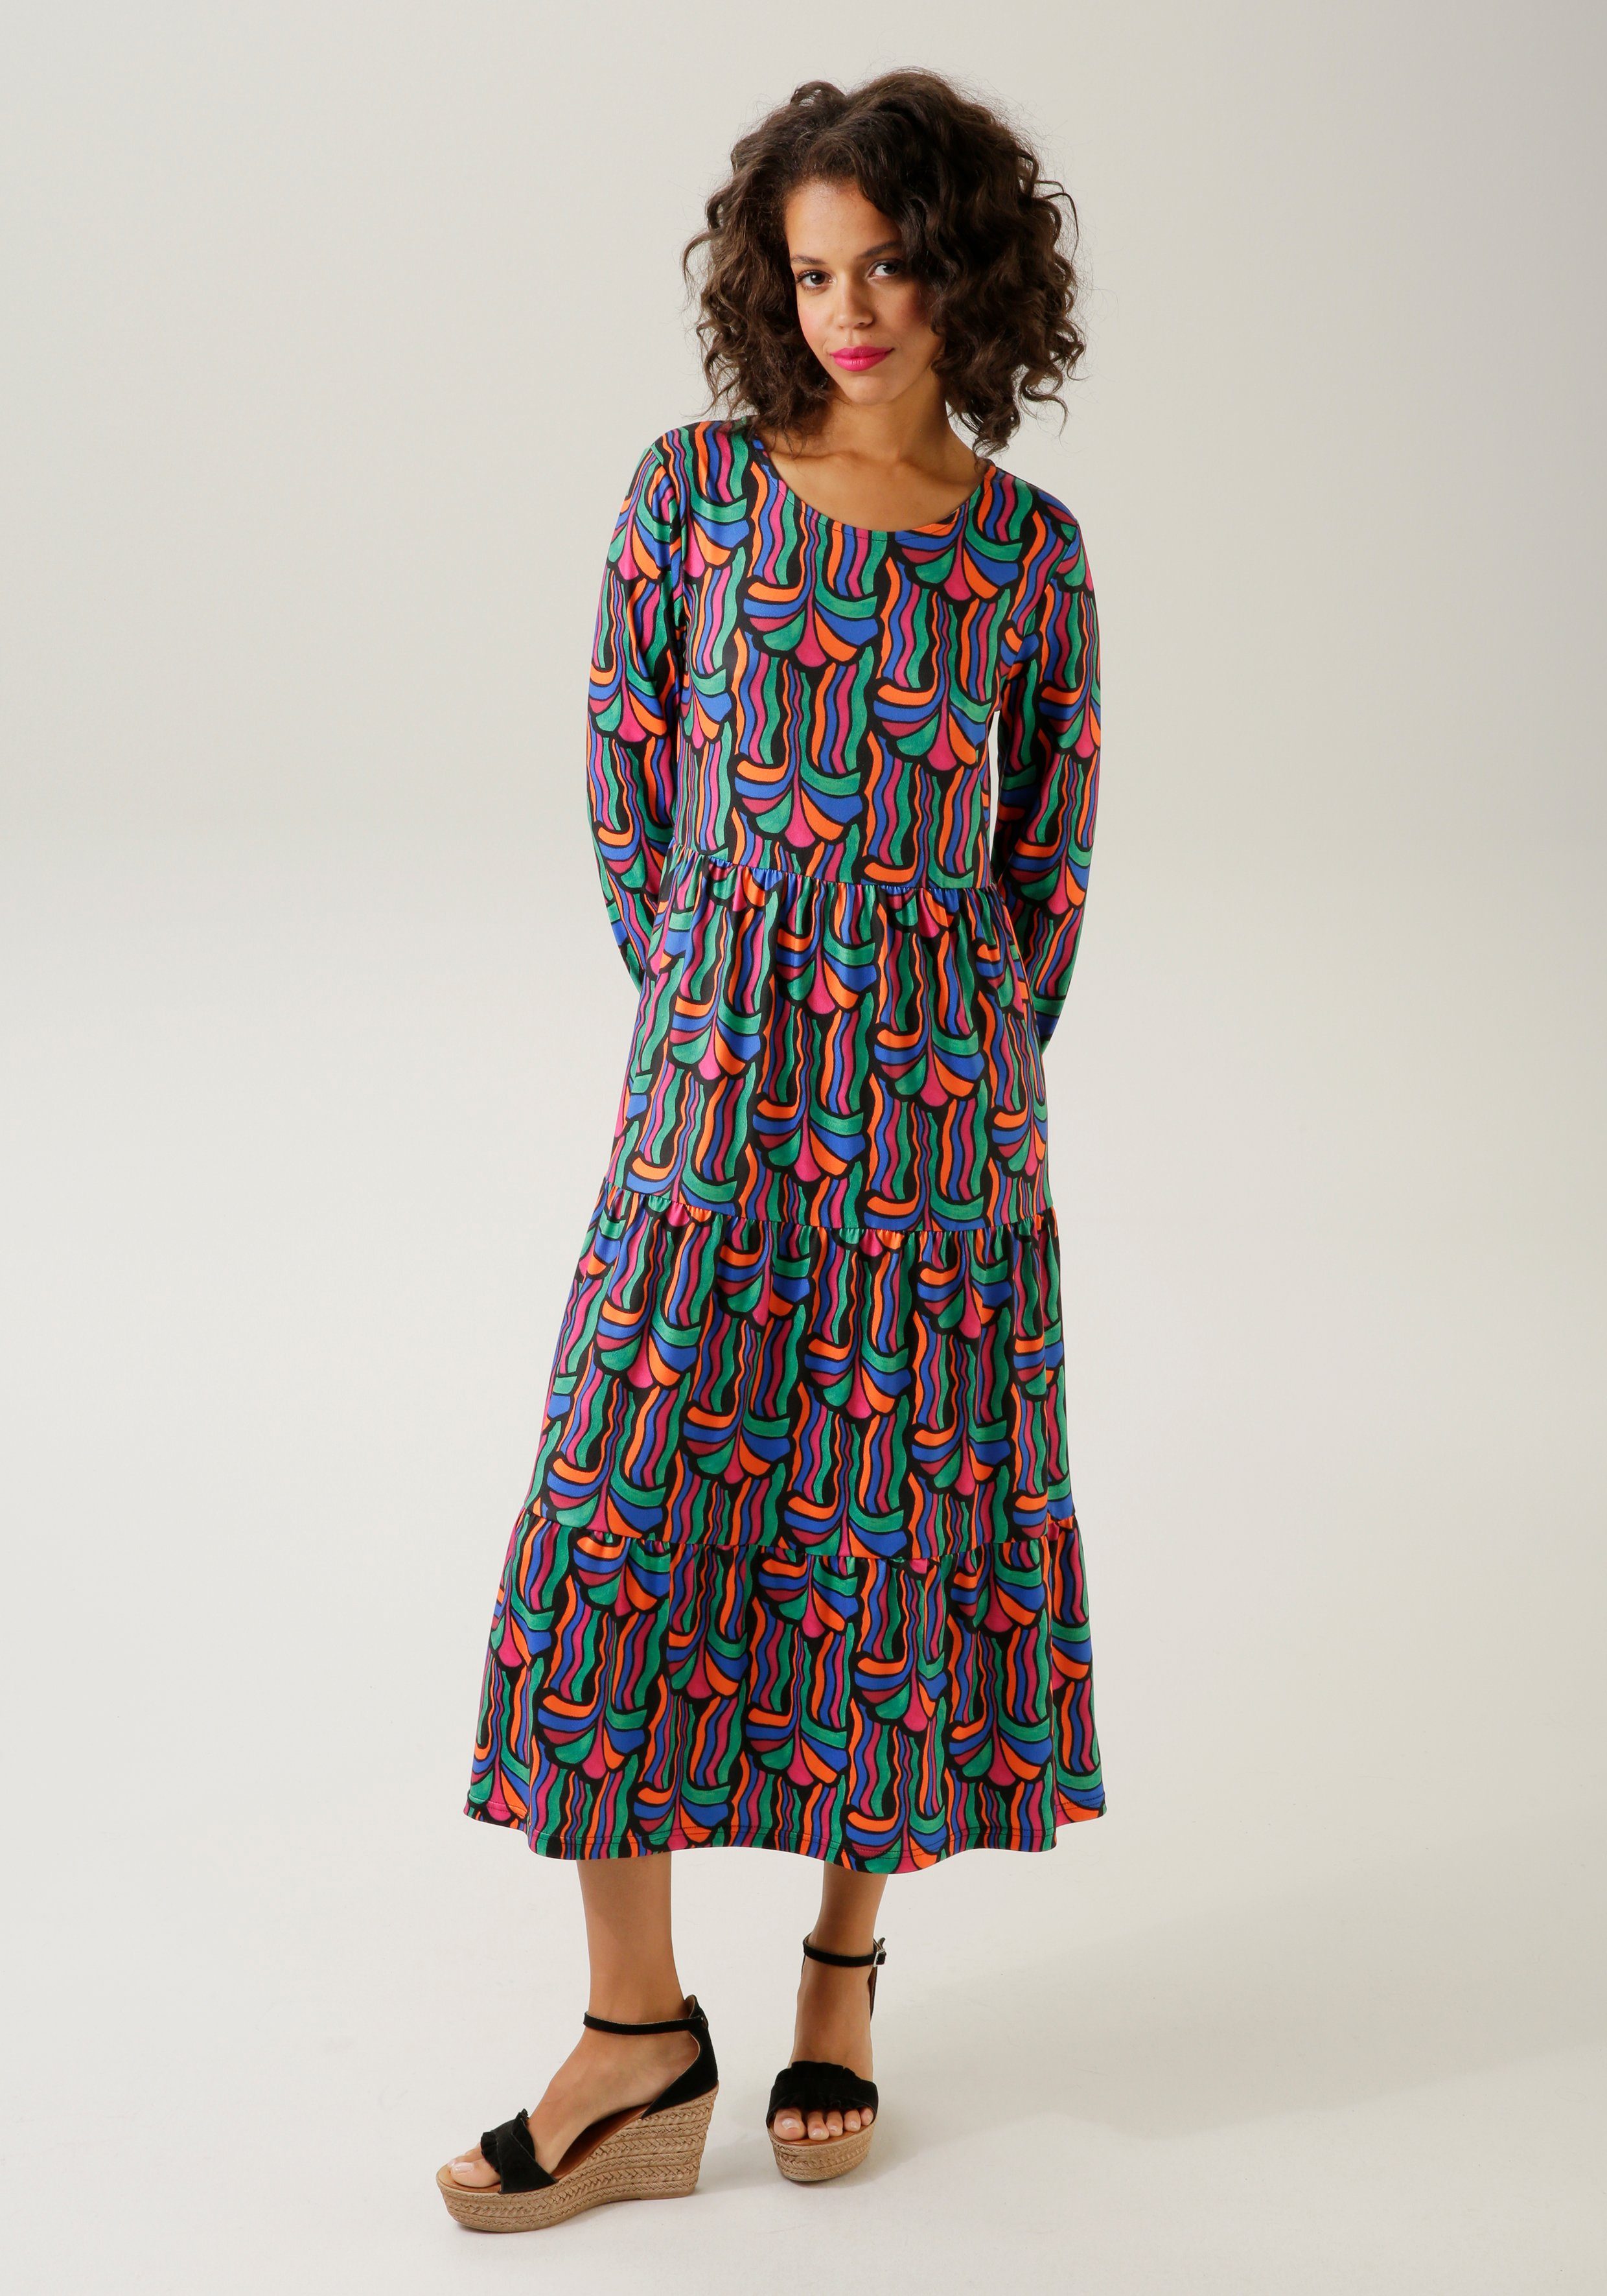 Aniston CASUAL Jerseykleid mit farbenfrohem, graphischem Druck - NEUE KOLLEKTION